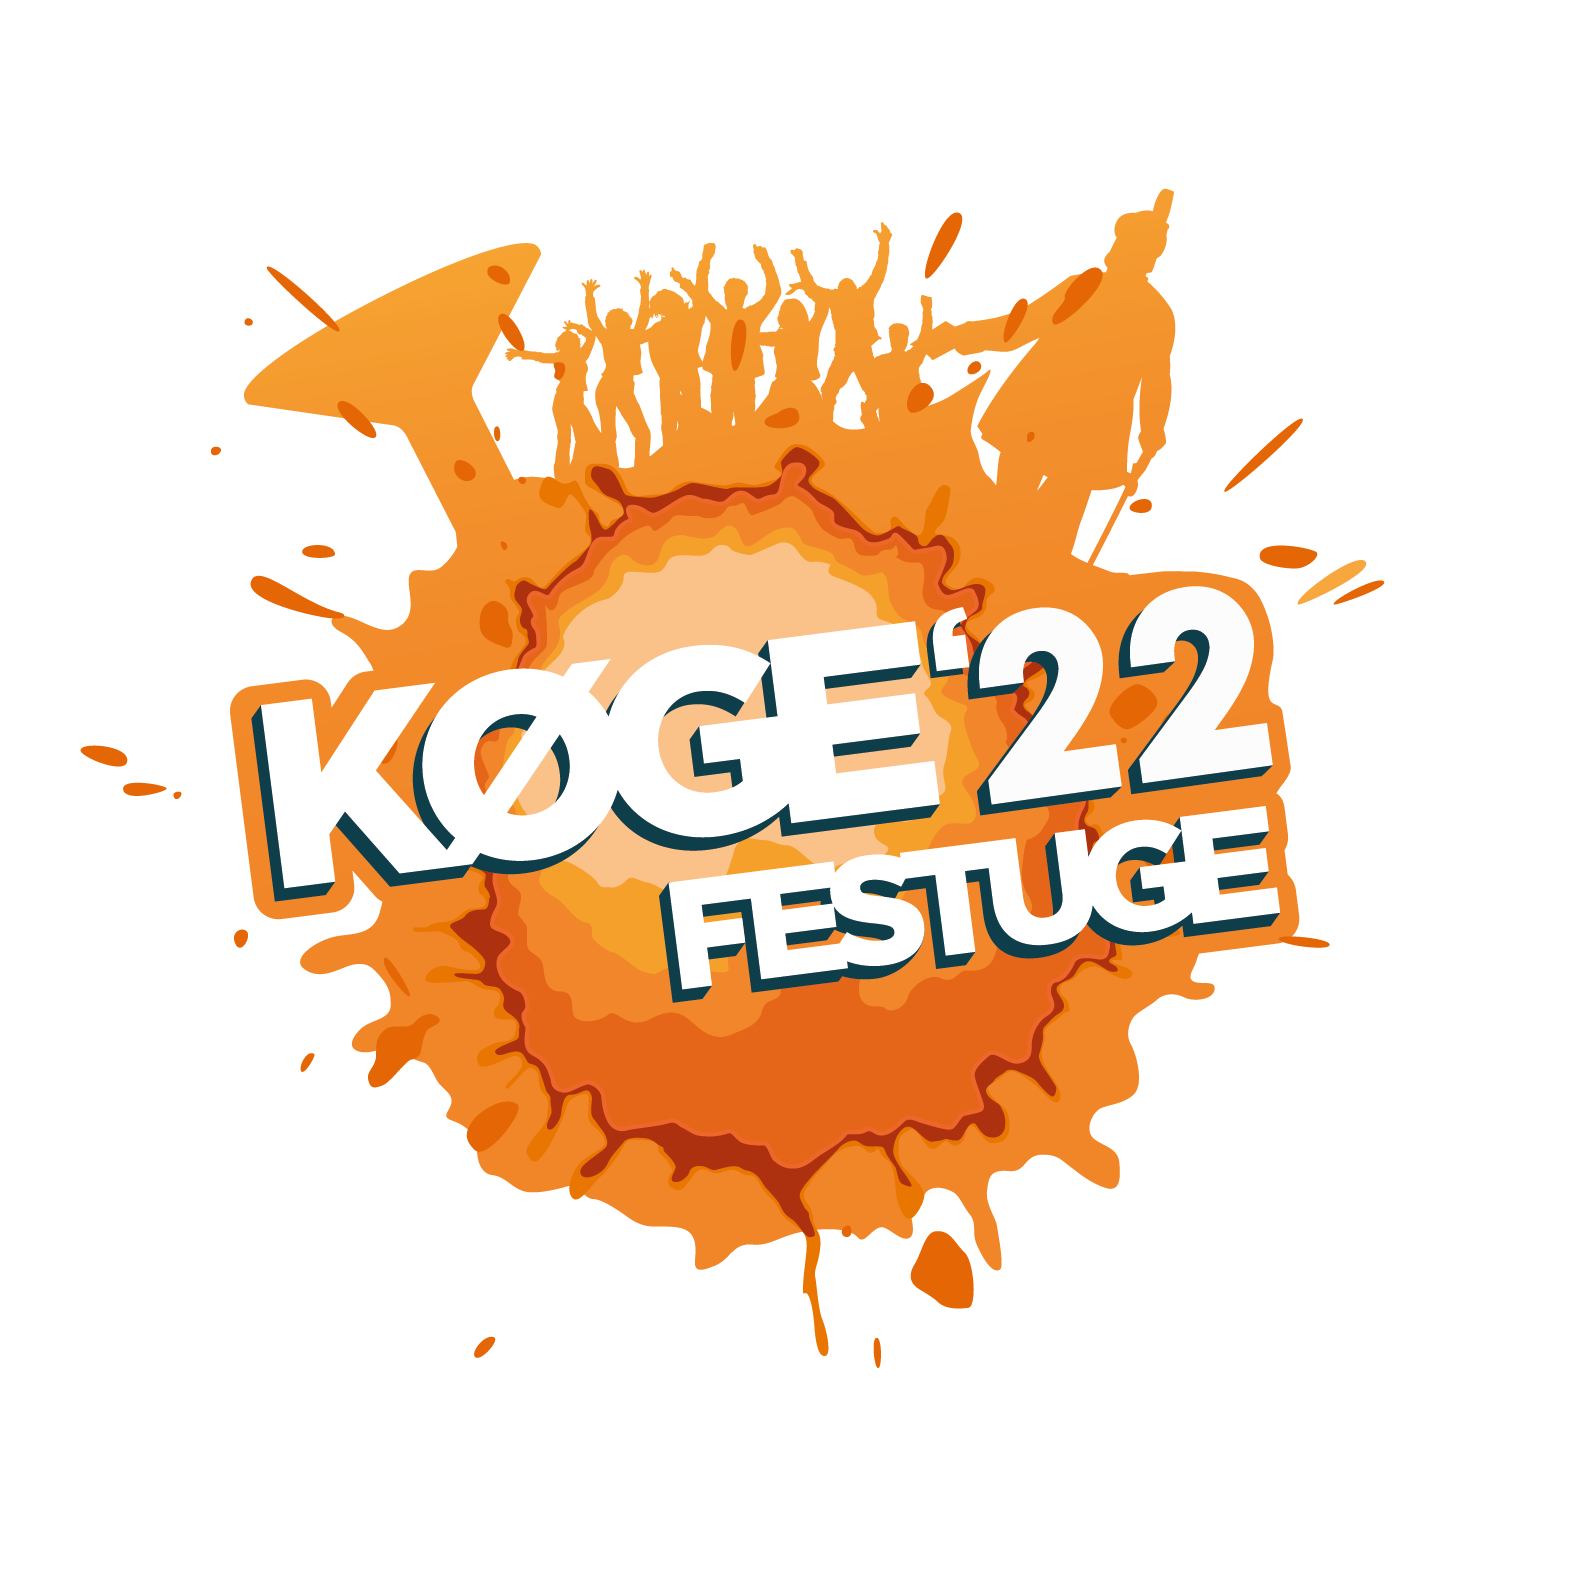 Køge Festuge - største festival!